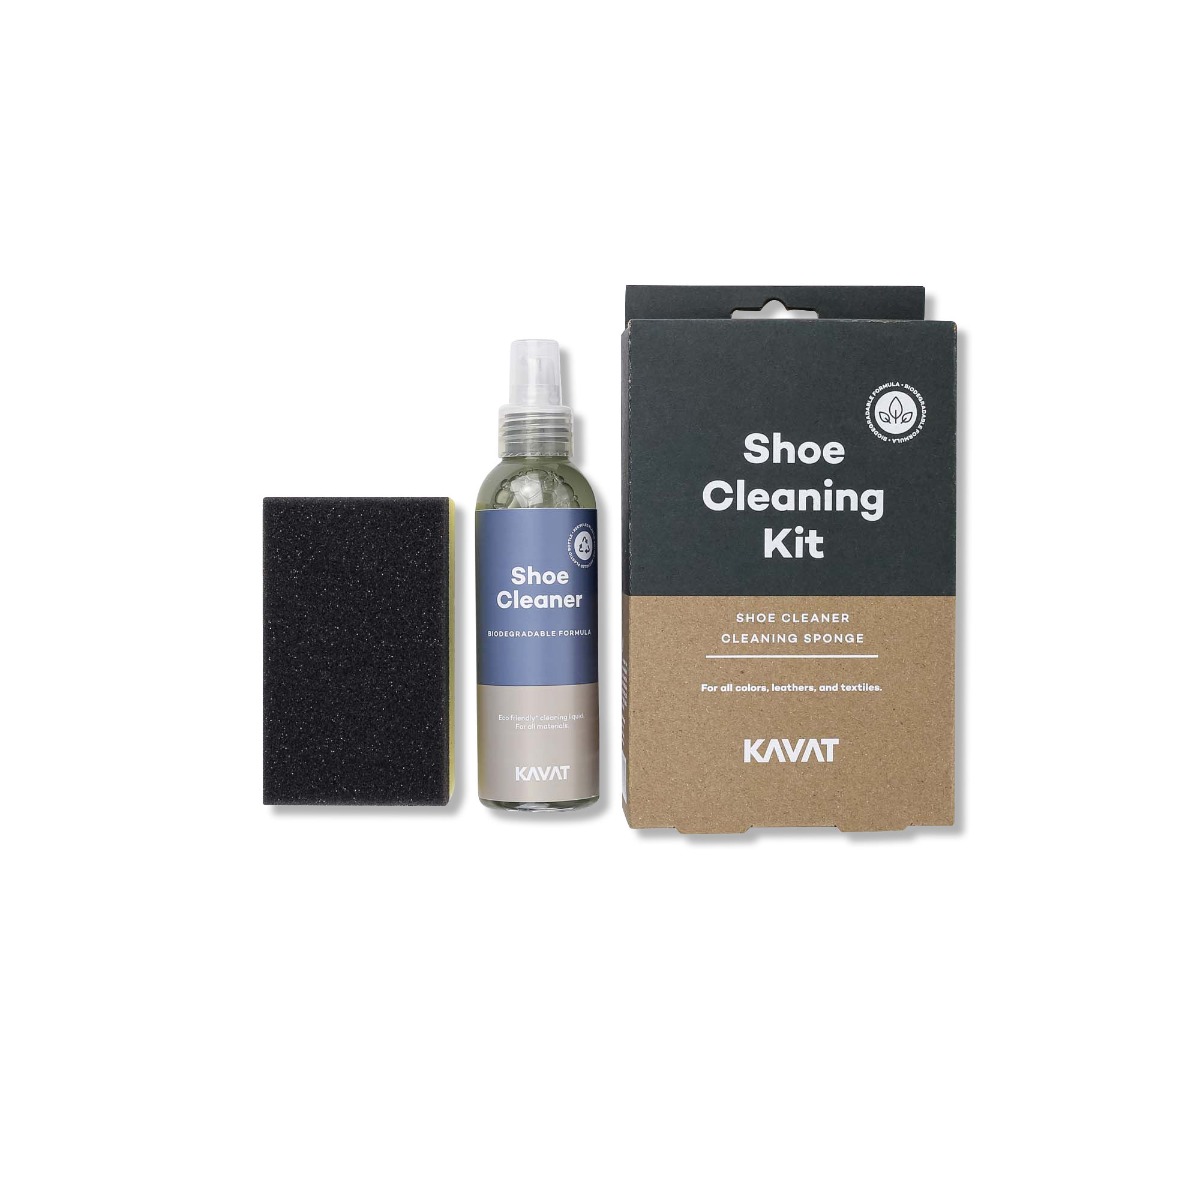 Shoe Cleaner kitproduct zoom image #1